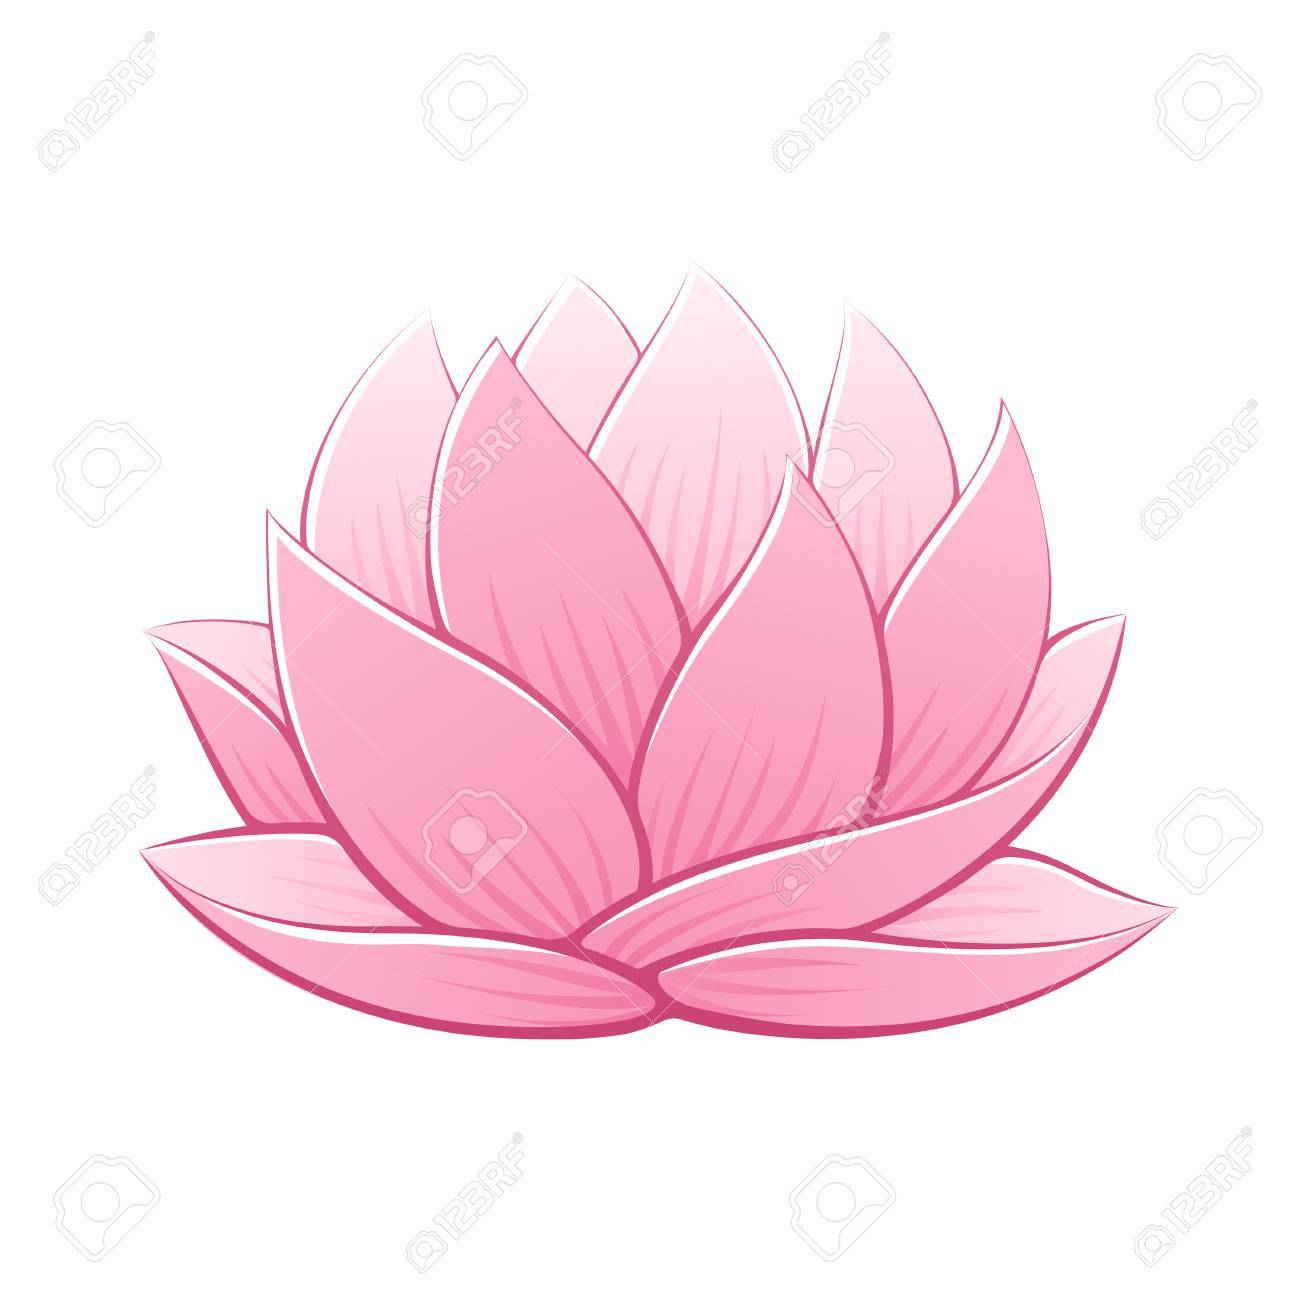 Dessin de fleur de lotus